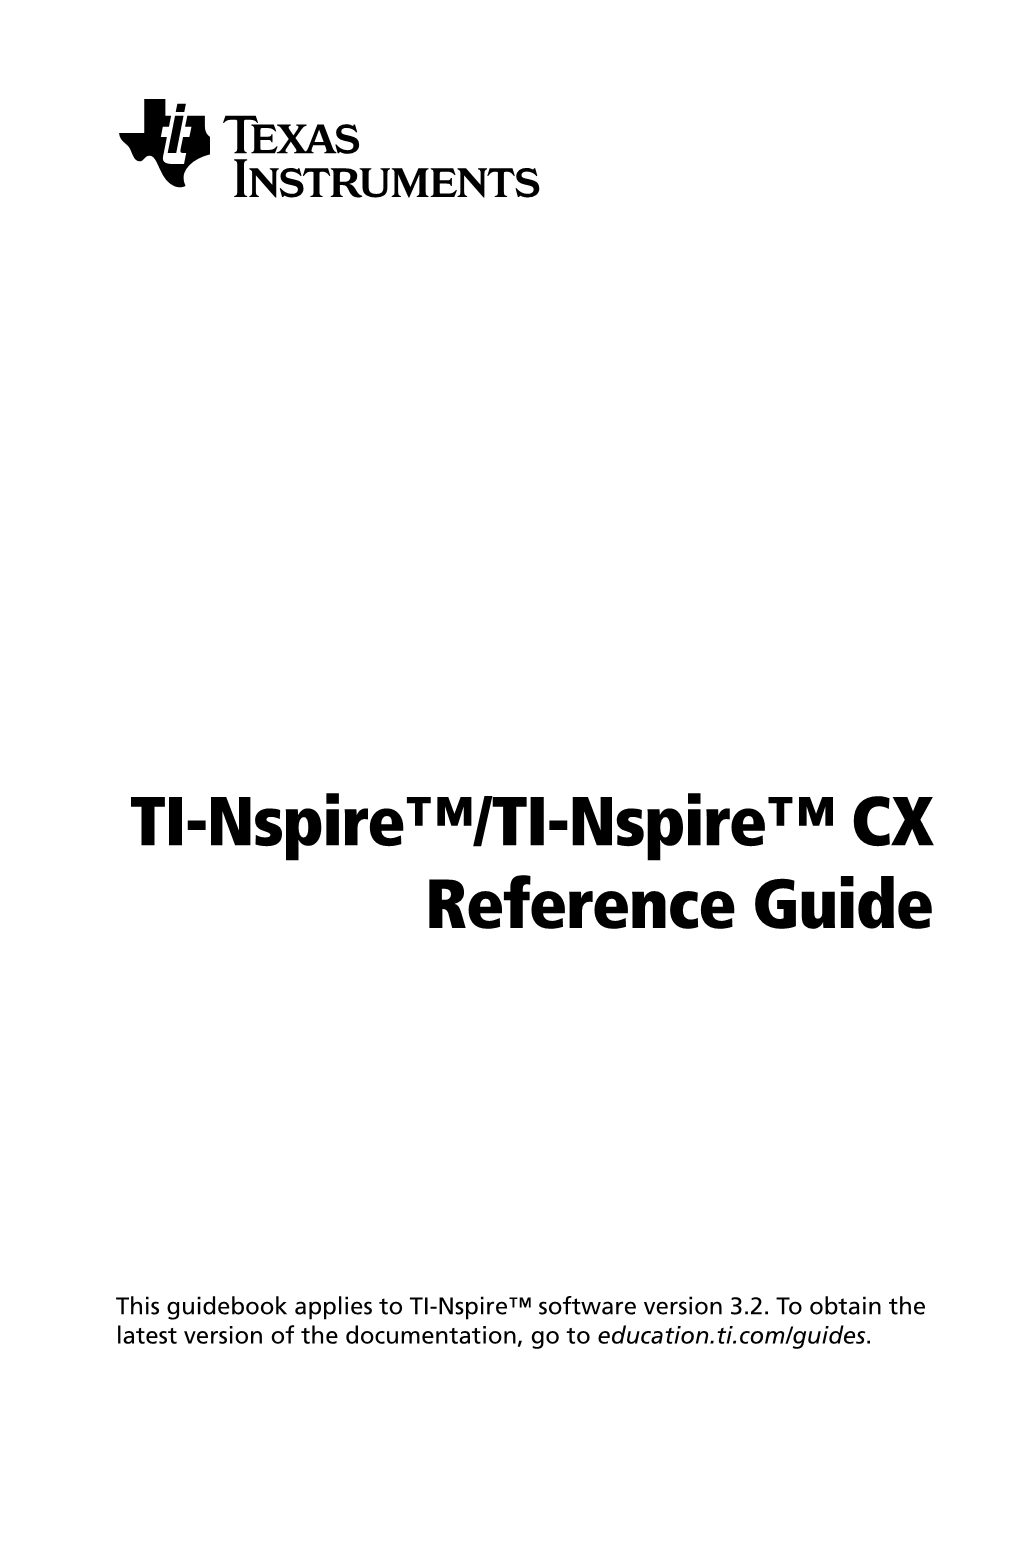 TI-Nspire™/TI-Nspire™ CX Reference Guide